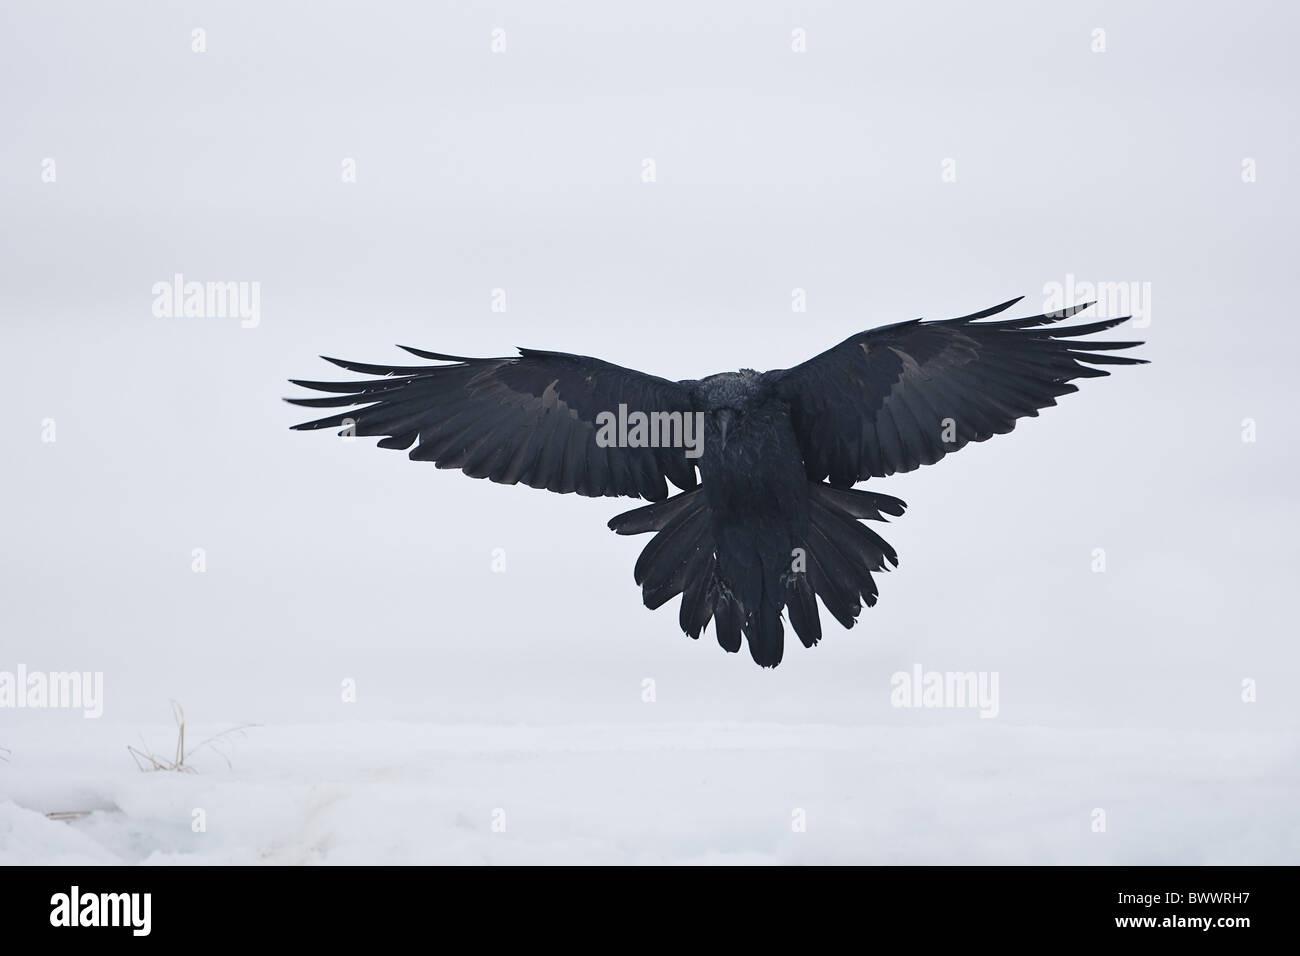 Gemeinsamen Raven (Corvus Corax Corax) Erwachsenen, im Flug, Landung auf Schnee, Lokka, Sodankyla, Finnland, winter Stockfoto